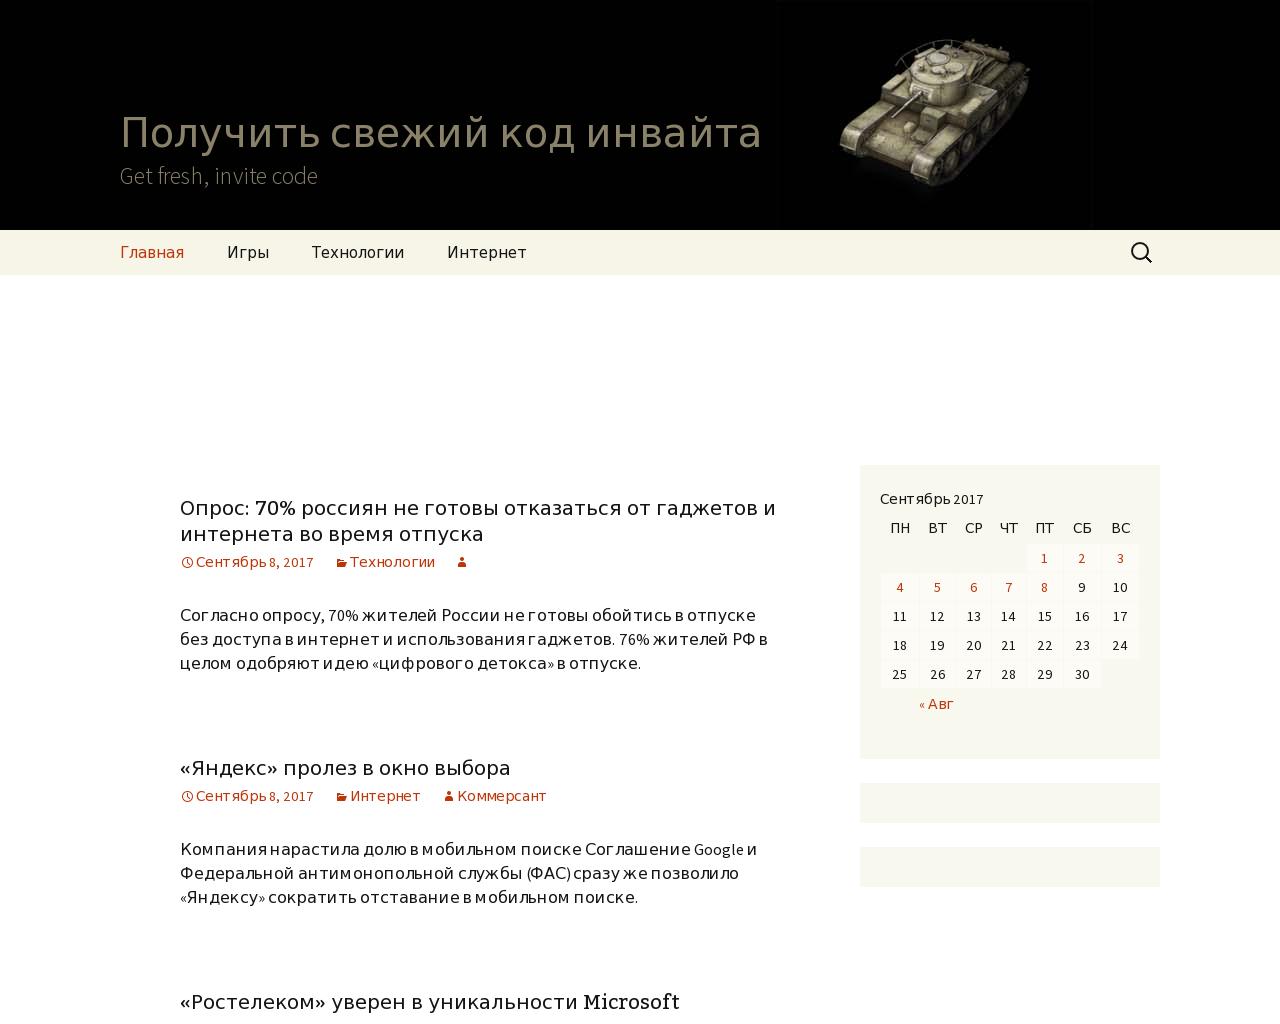 Изображение сайта invaitor.ru в разрешении 1280x1024